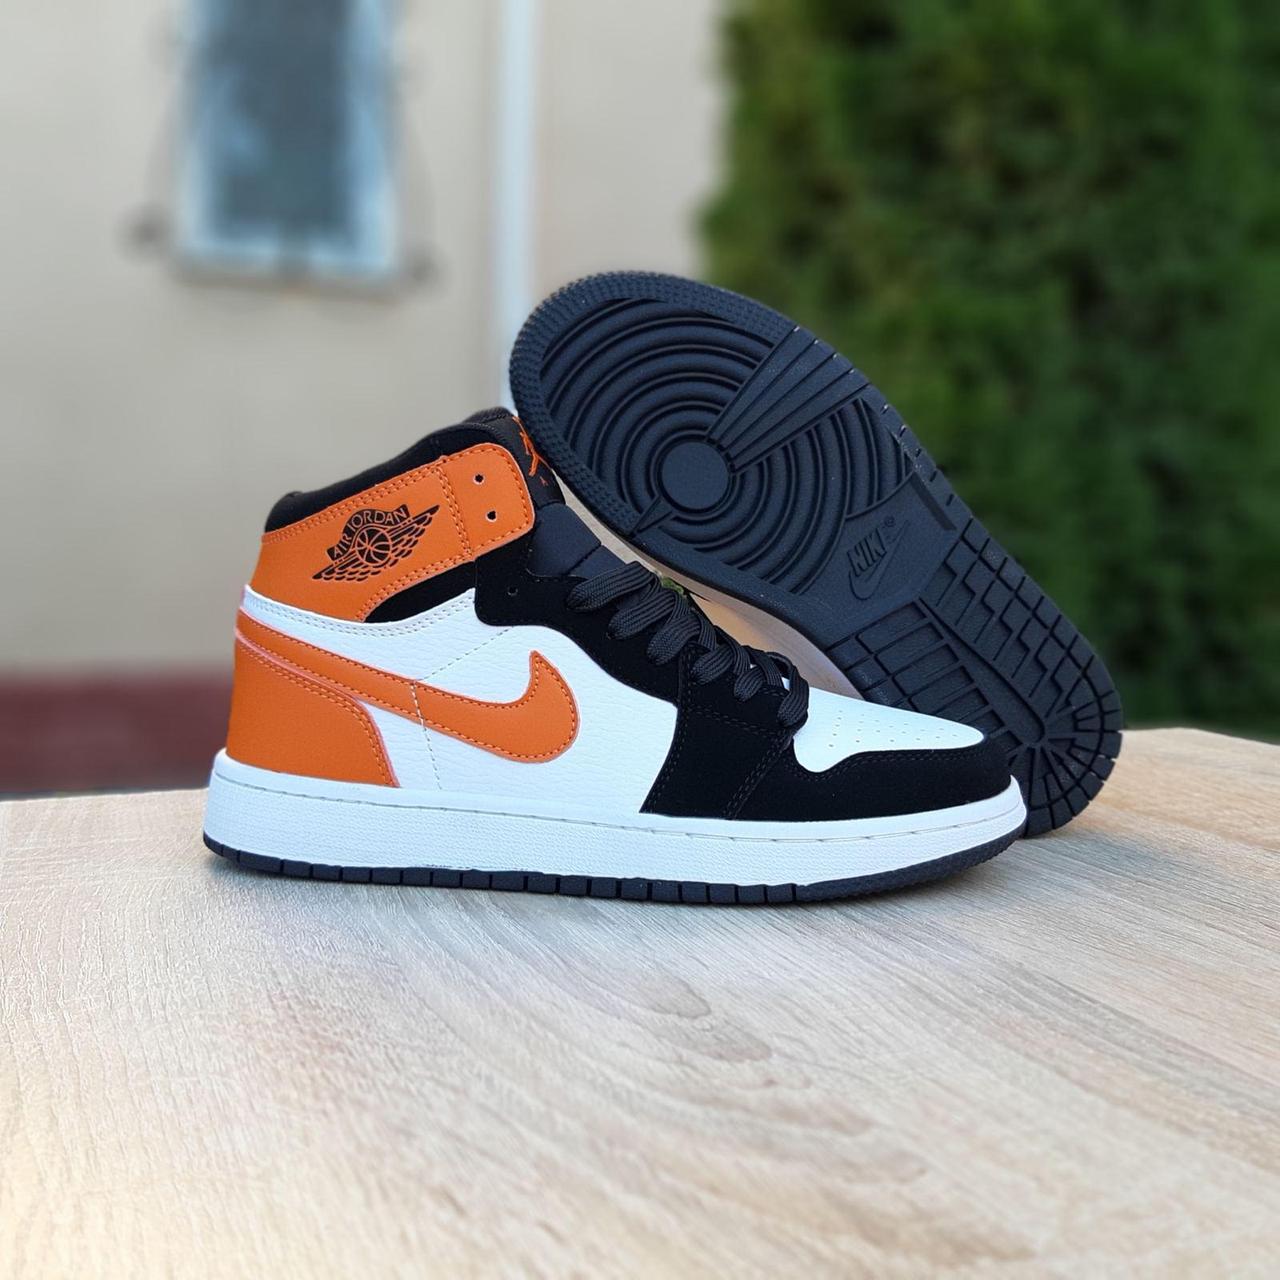 

Кроссовки подростковые Nike Air Jordan белые с оранжевым, Найк Джордан, натуральная кожа, прошиты. 20240 40